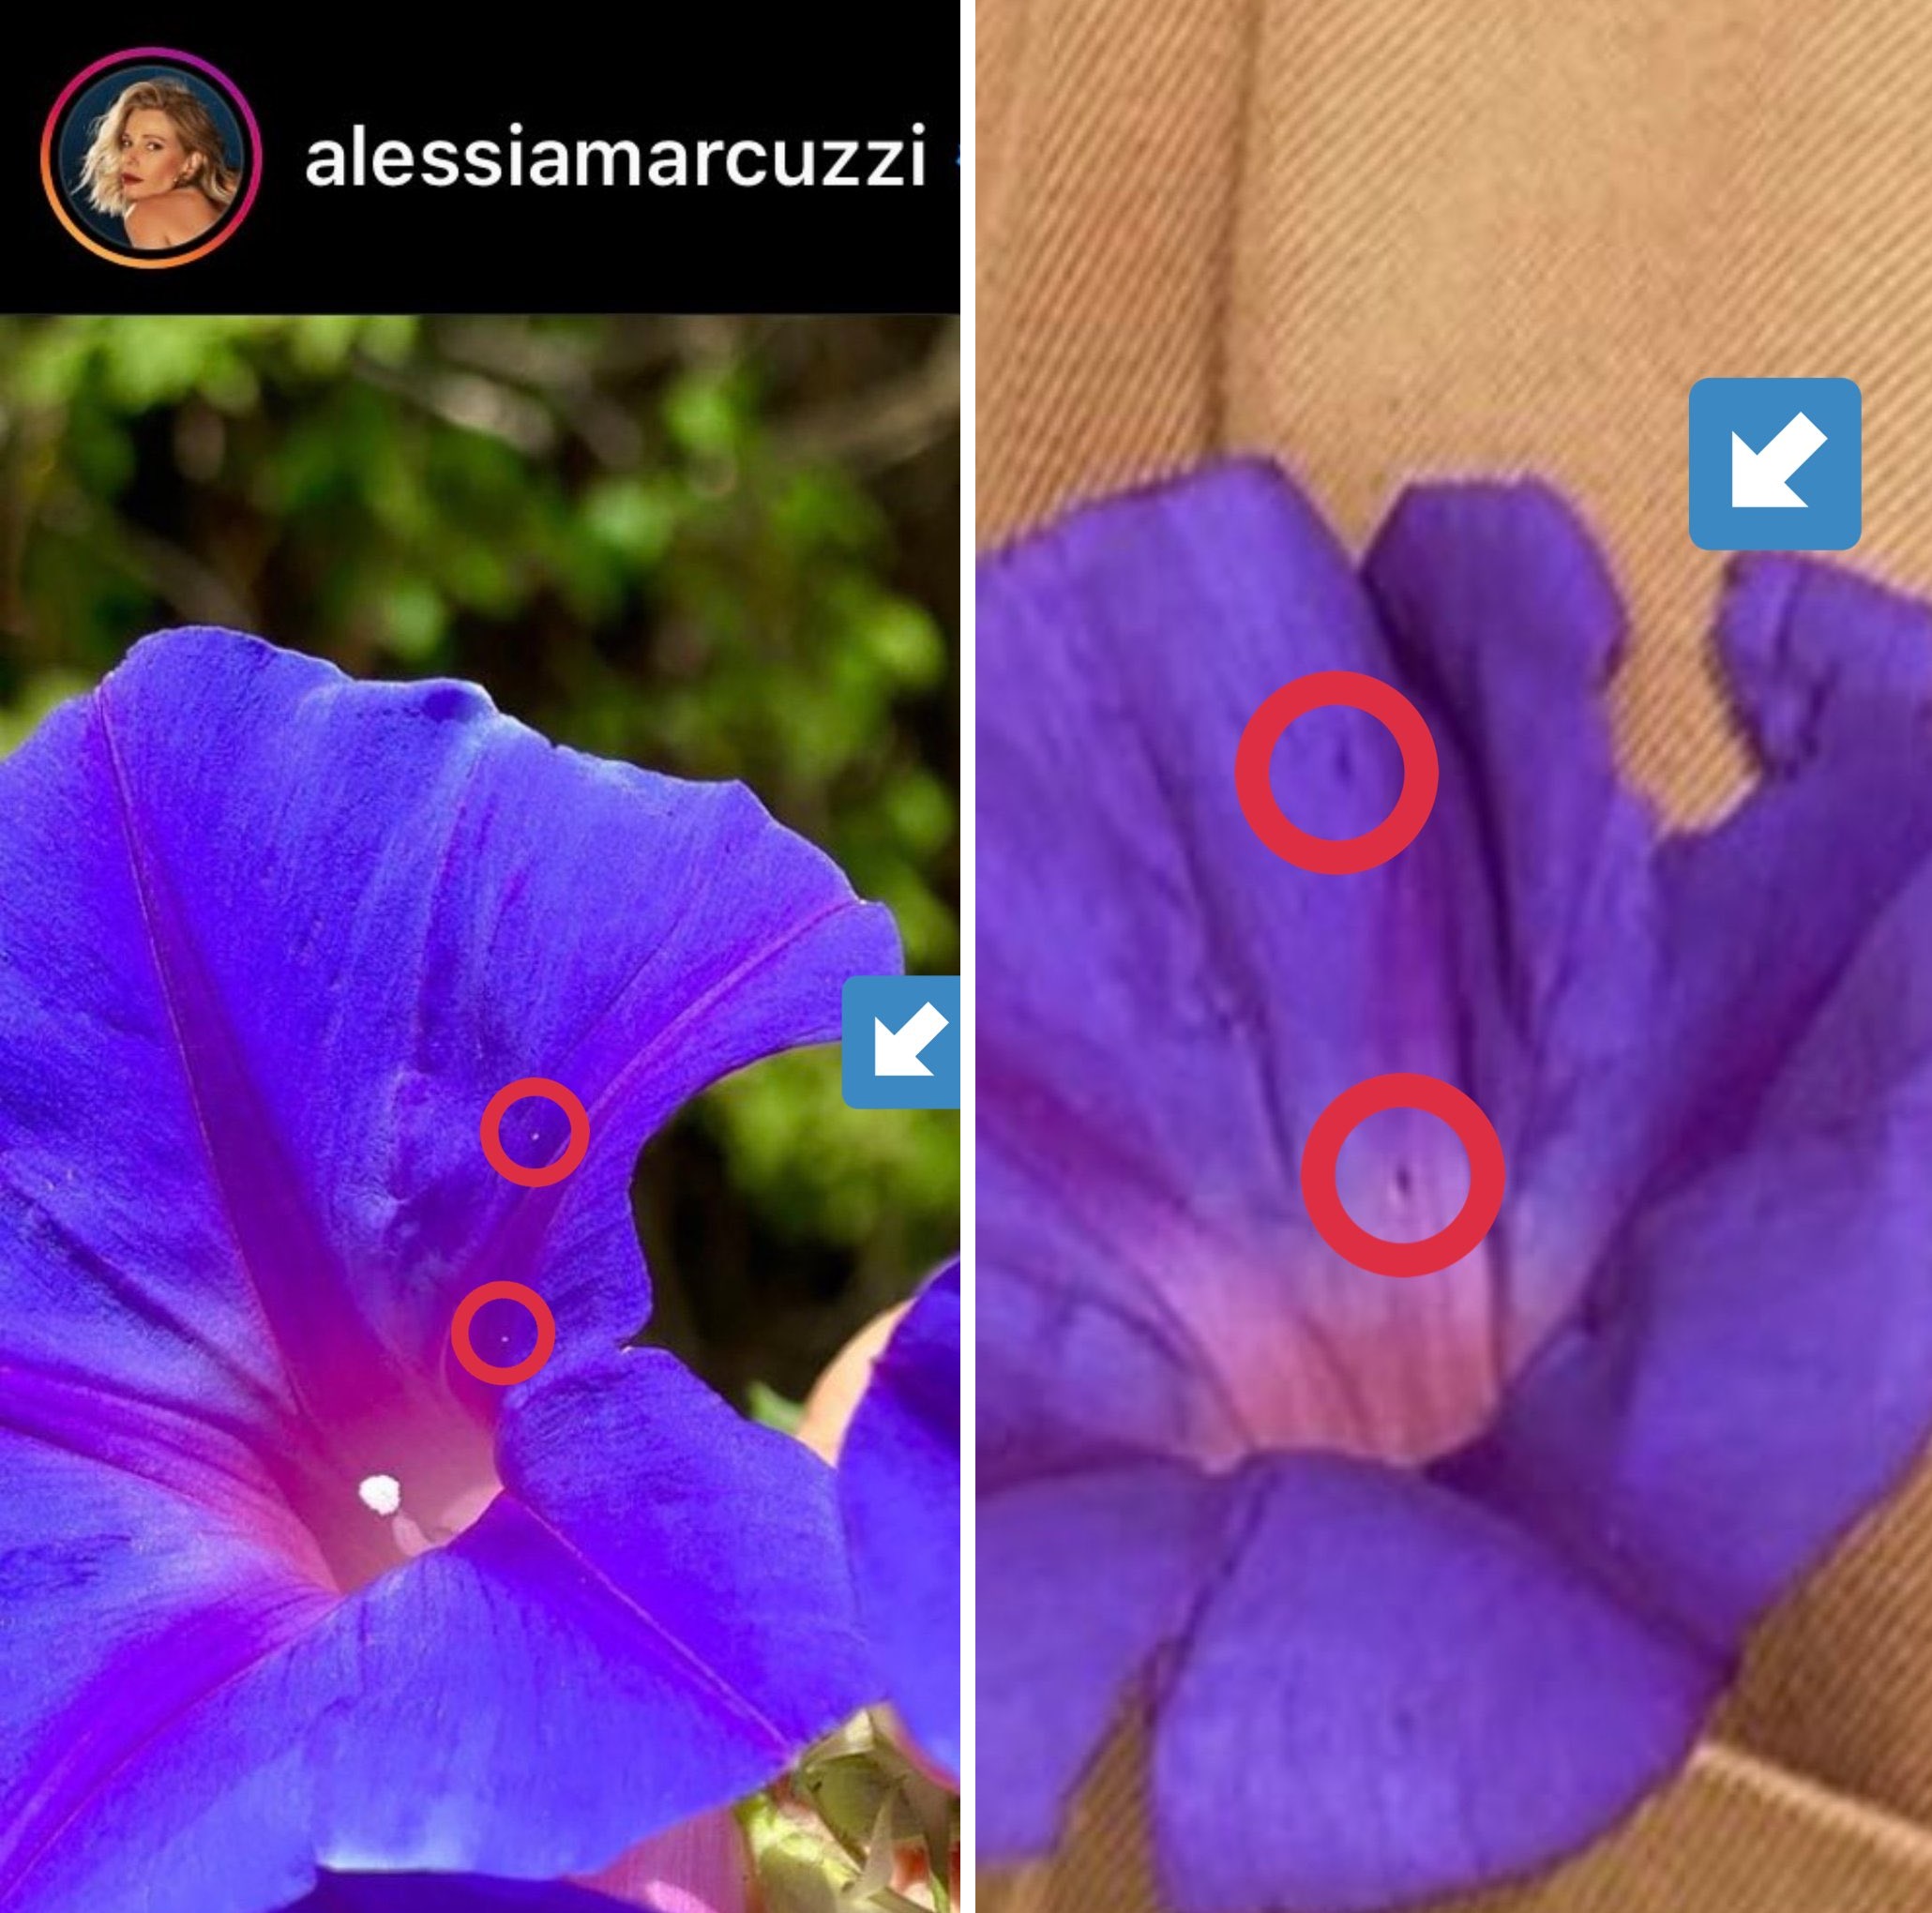 Altro dettaglio del fiore di Alessia Marcuzzi e Stefano De Martino